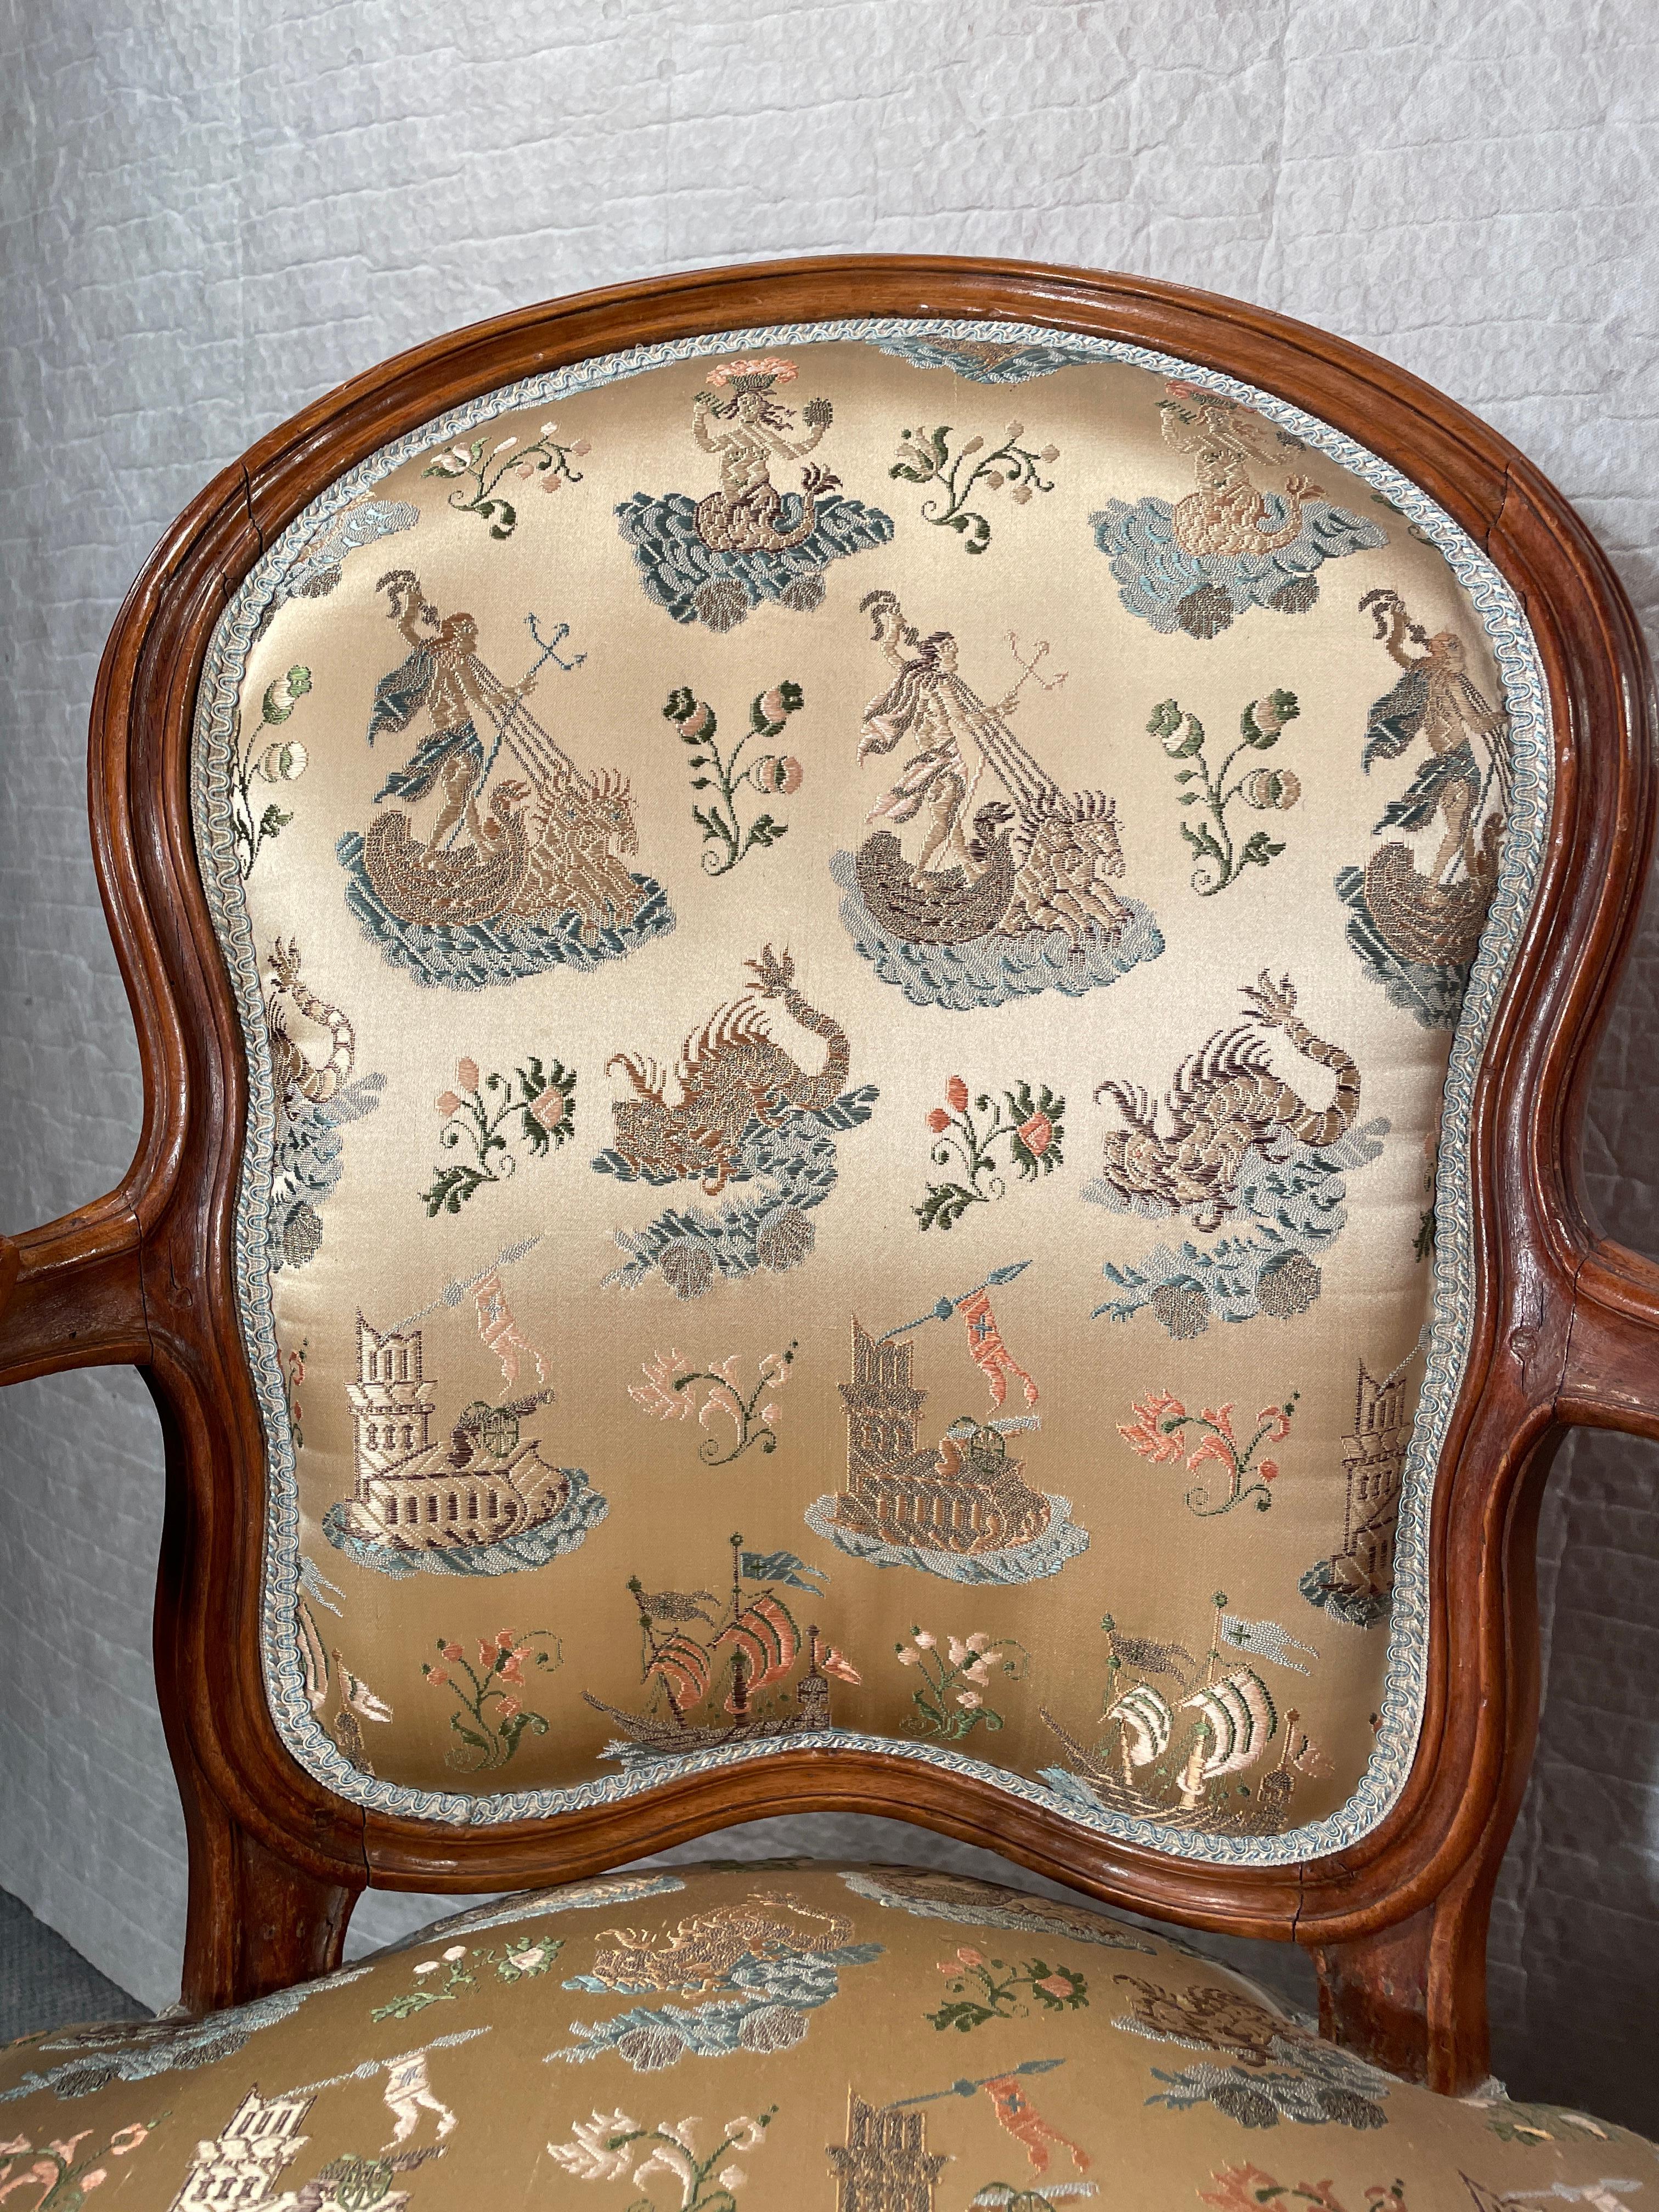 Découvrez le charme intemporel de cette paire de fauteuils Louis XV, dont les cadres en noyer aux courbes gracieuses sont ornés de sculptures complexes. Ces superbes fauteuils sont remarquablement conservés dans leur état d'origine, mettant en